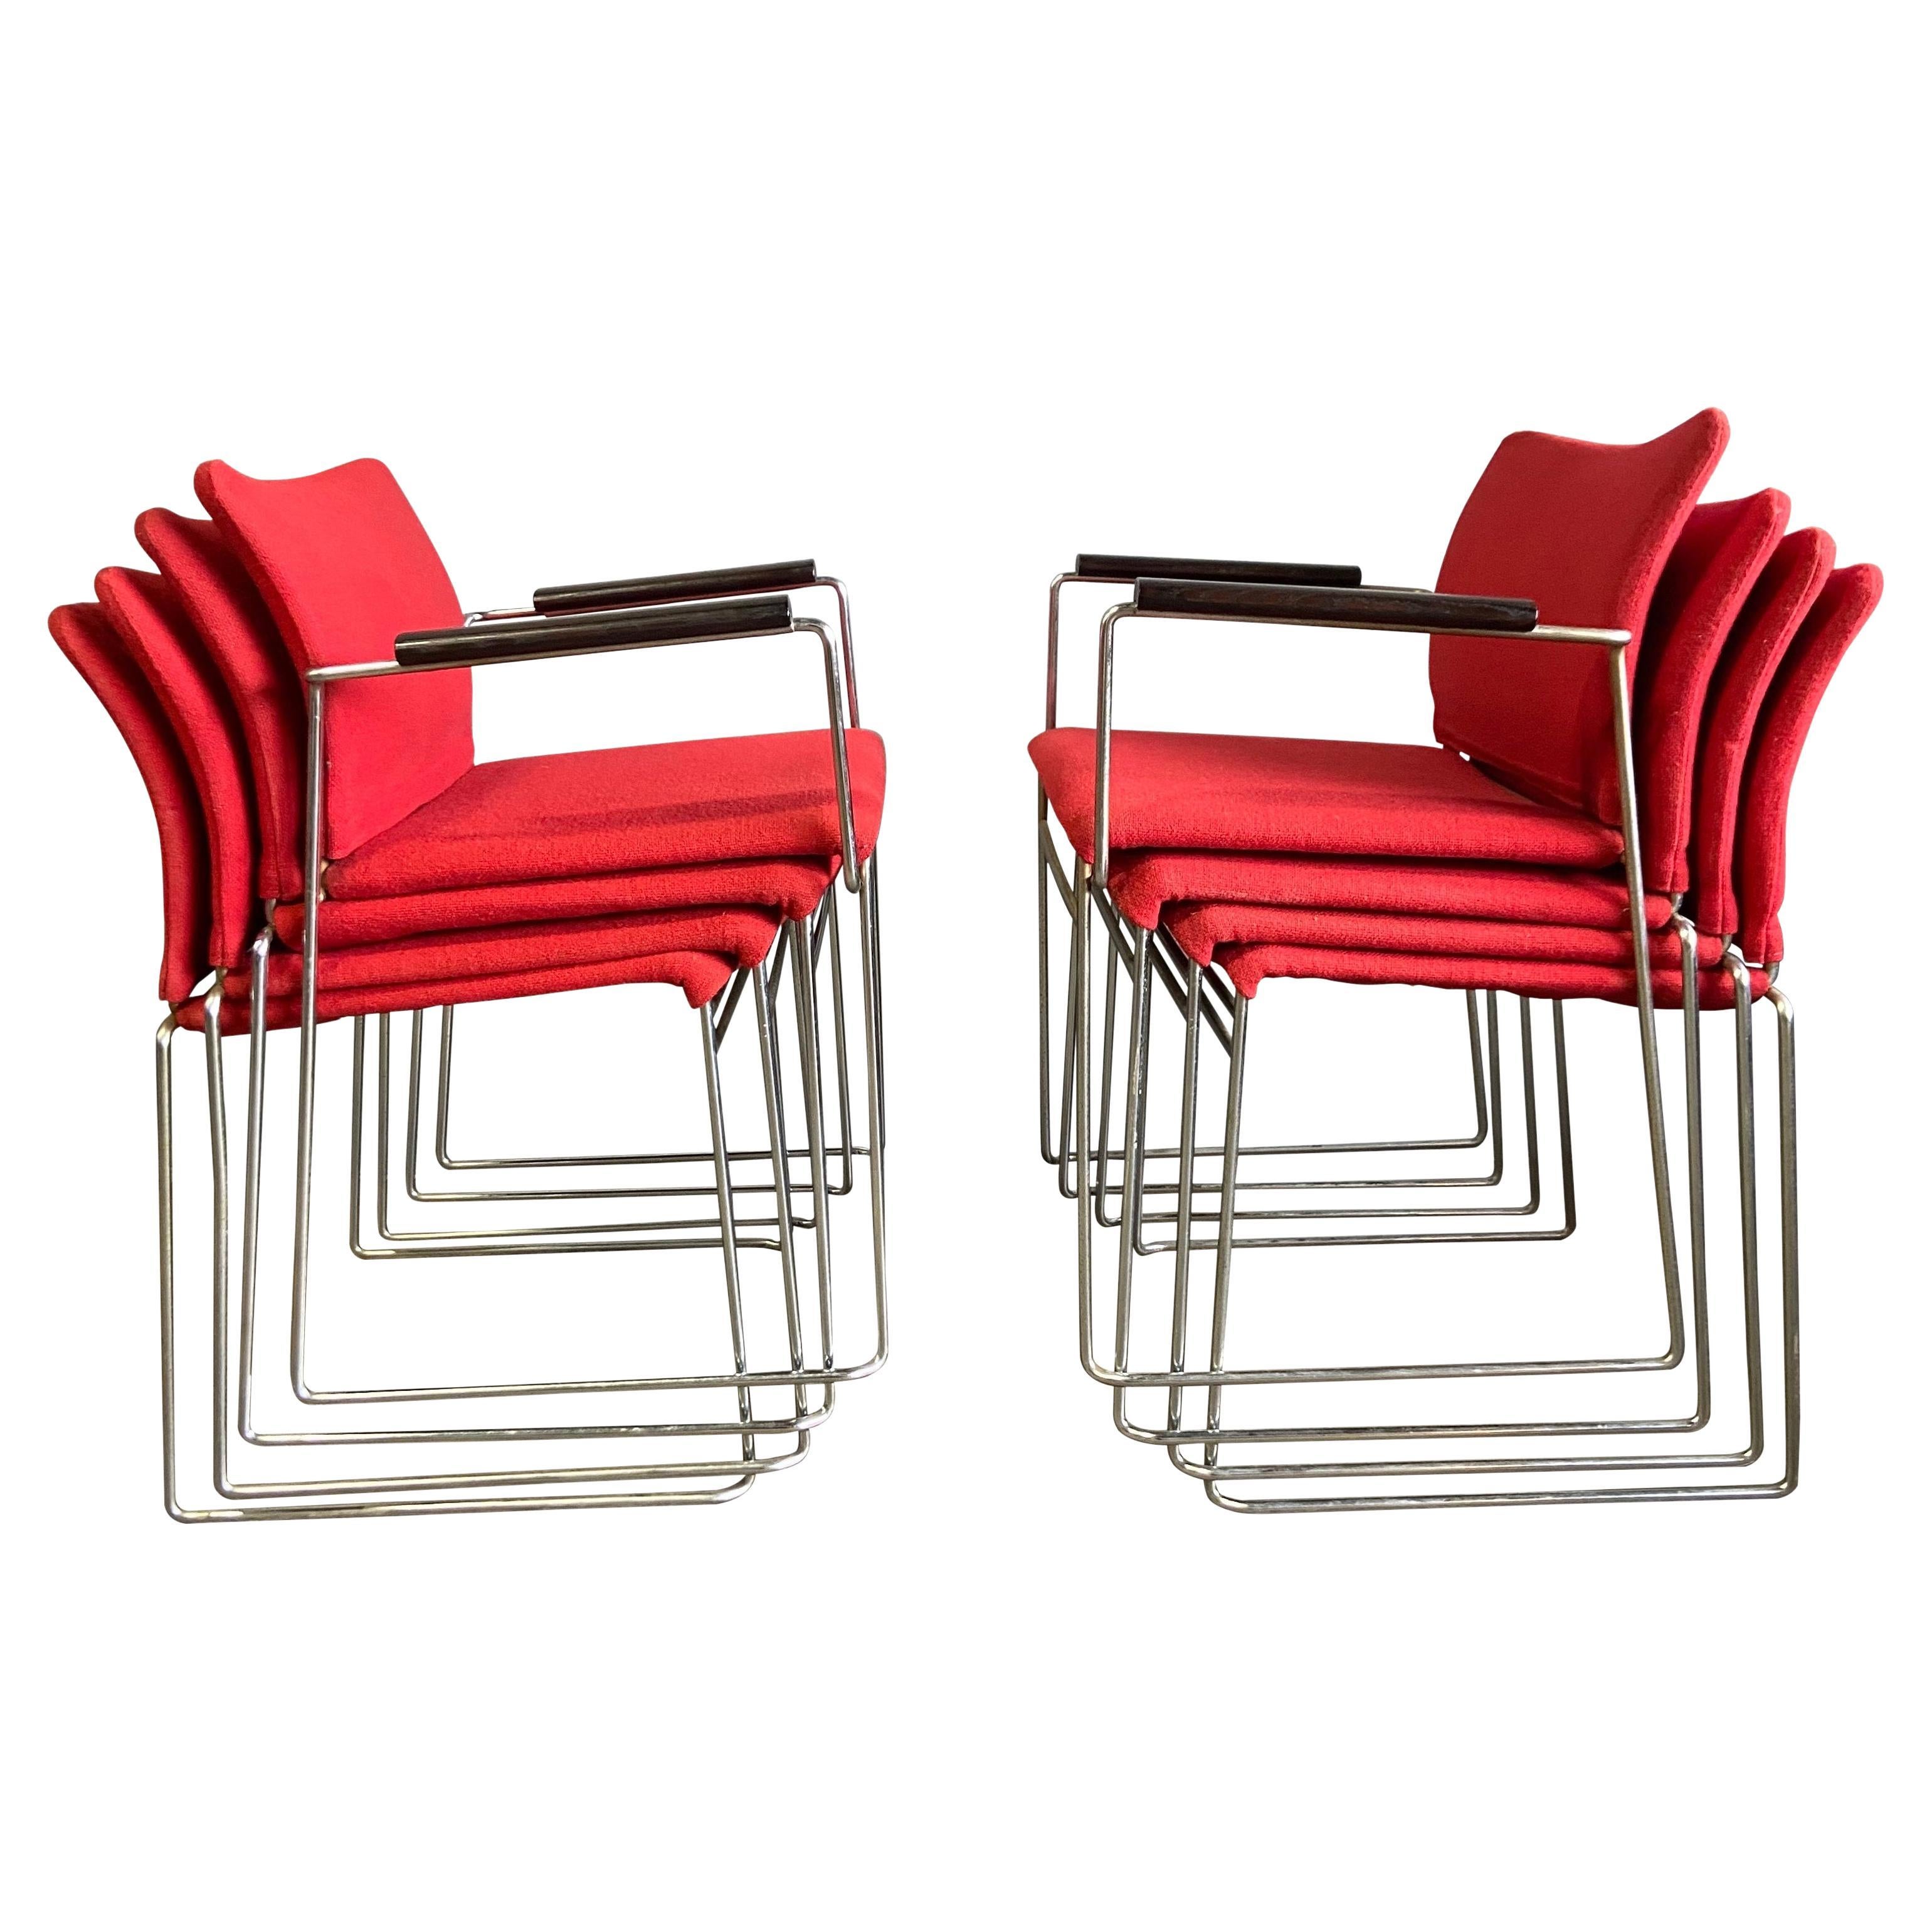 Nous vous présentons ces magnifiques chaises Jano conçues par Kazuhide Takahama. Rembourrage d'origine sur une structure en acier chromé. Ils sont originaux et produits par Simon Gavina et maintenant Cassina. S'intègre parfaitement à toute maison